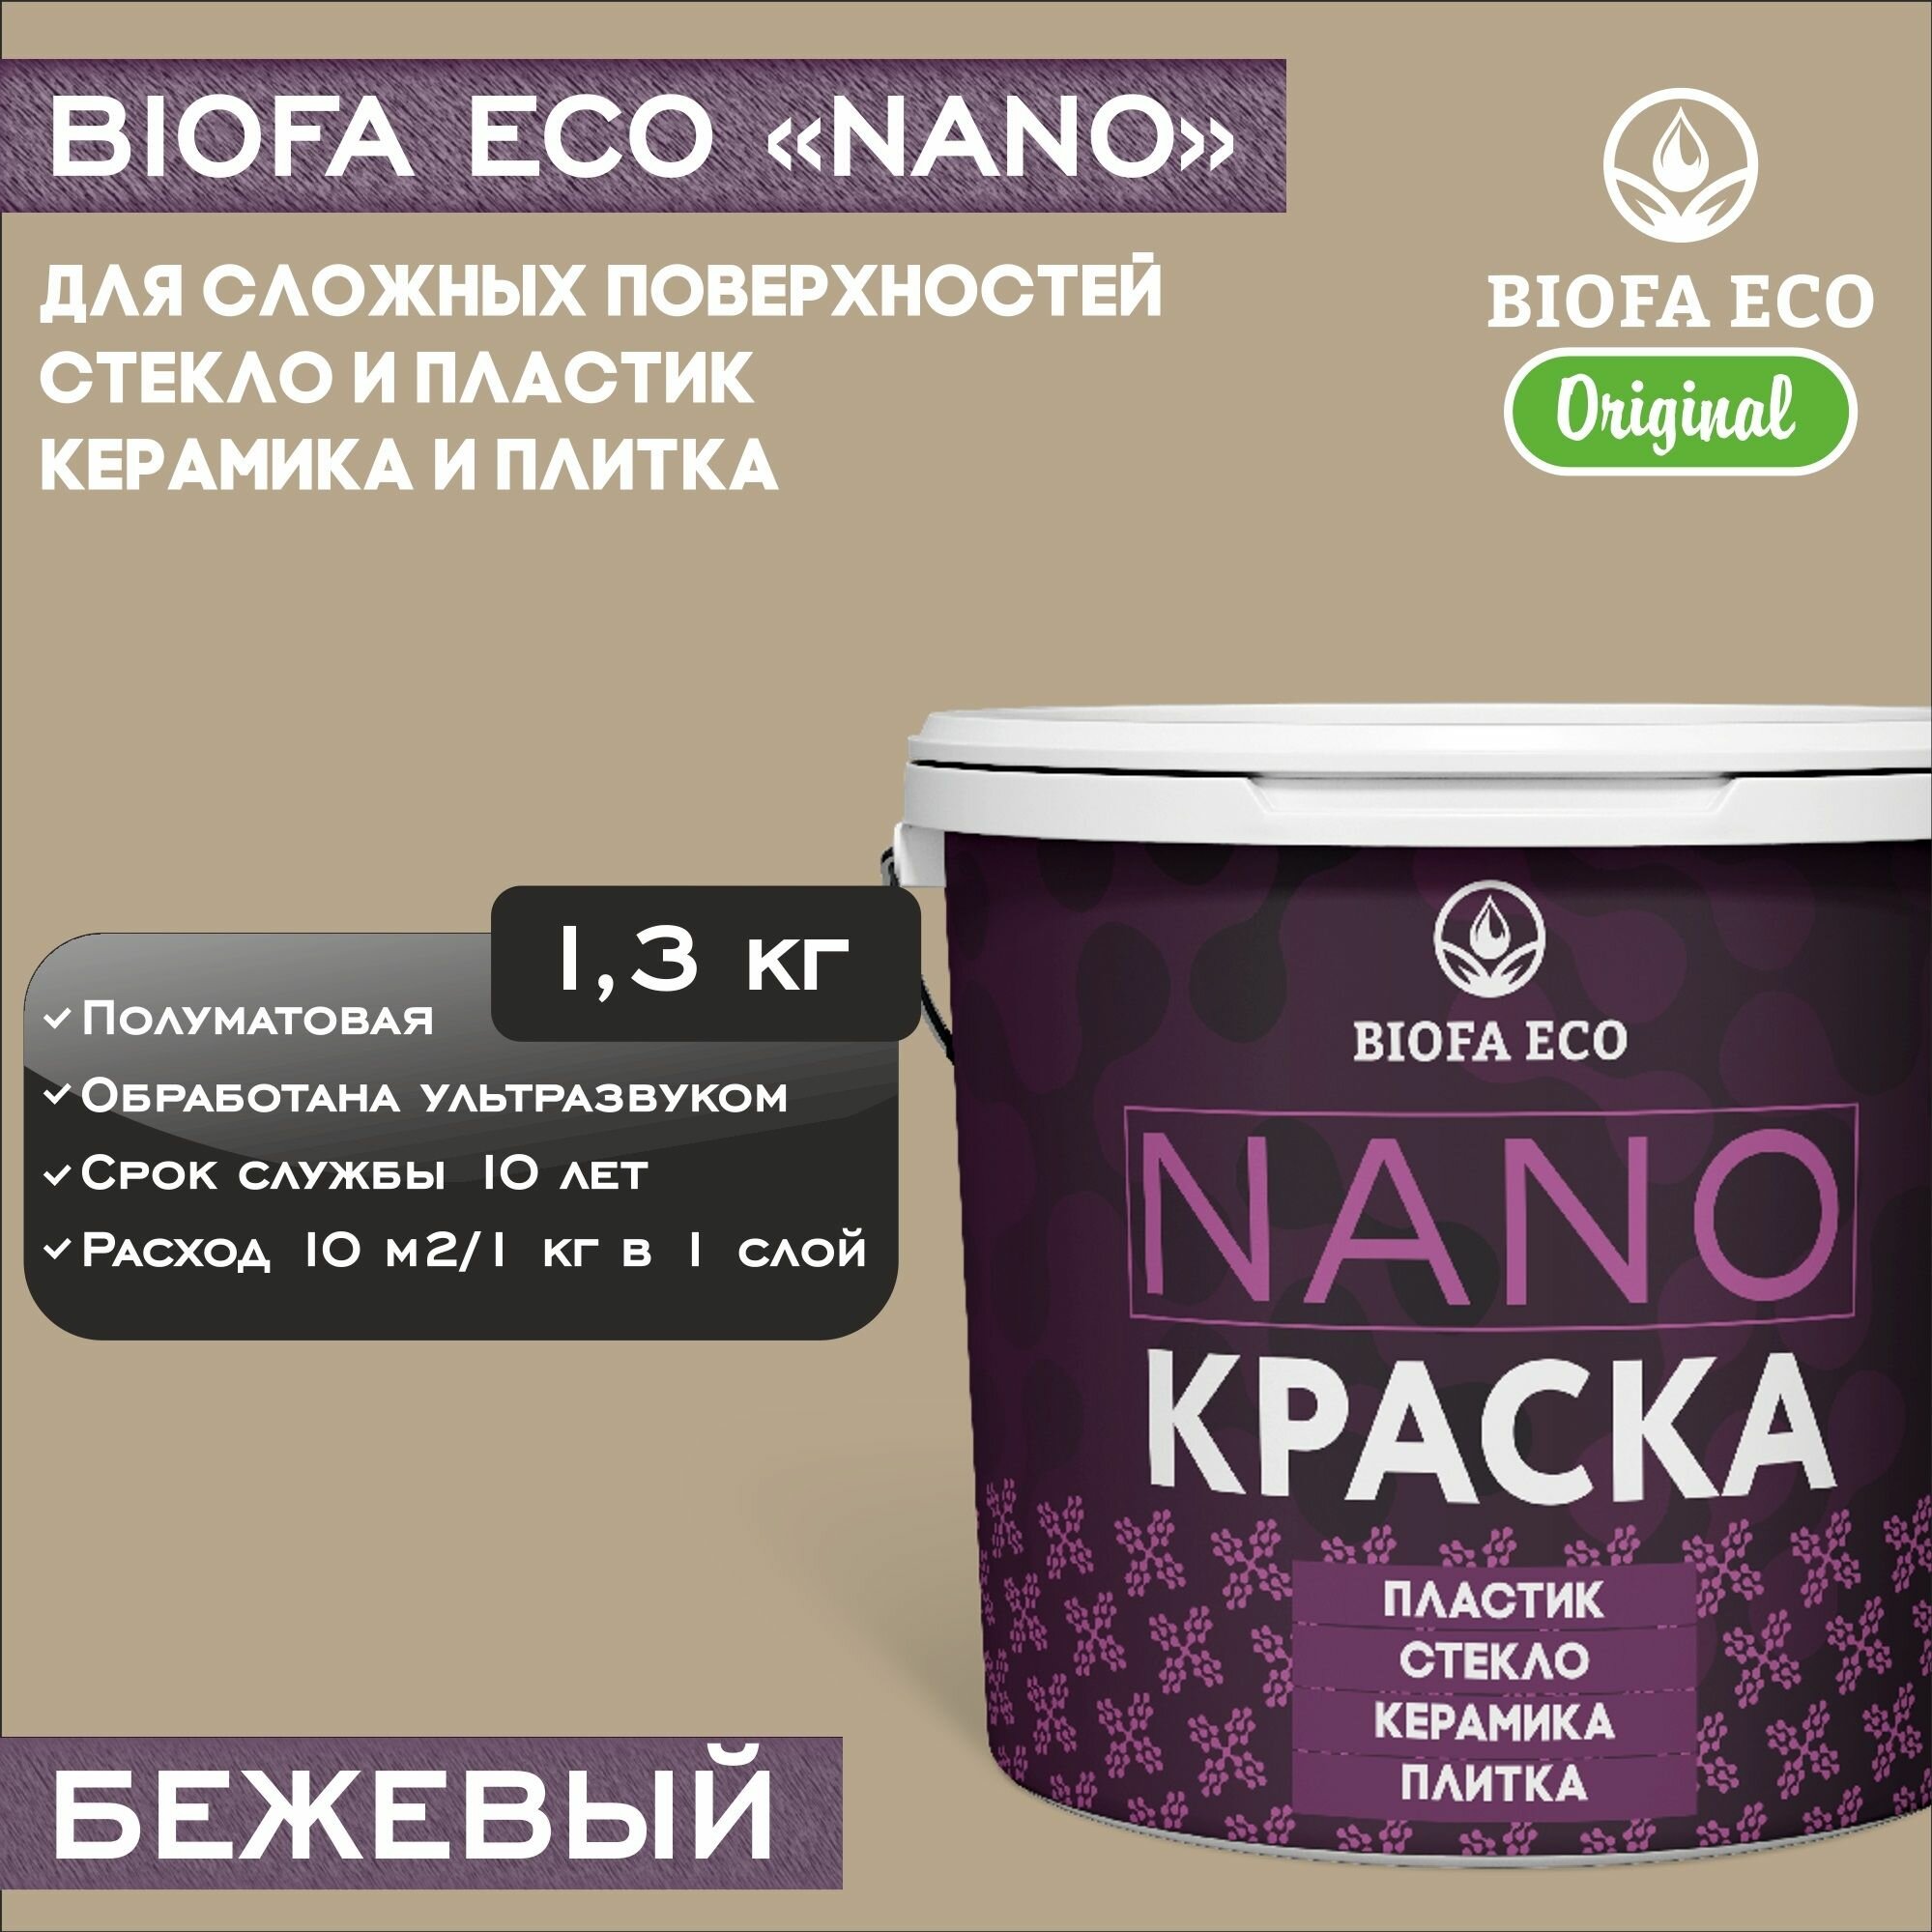 Краска BIOFA ECO NANO для твердых и сложных поверхностей, адгезионная, полуматовая, цвет бежевый, 1,3 кг